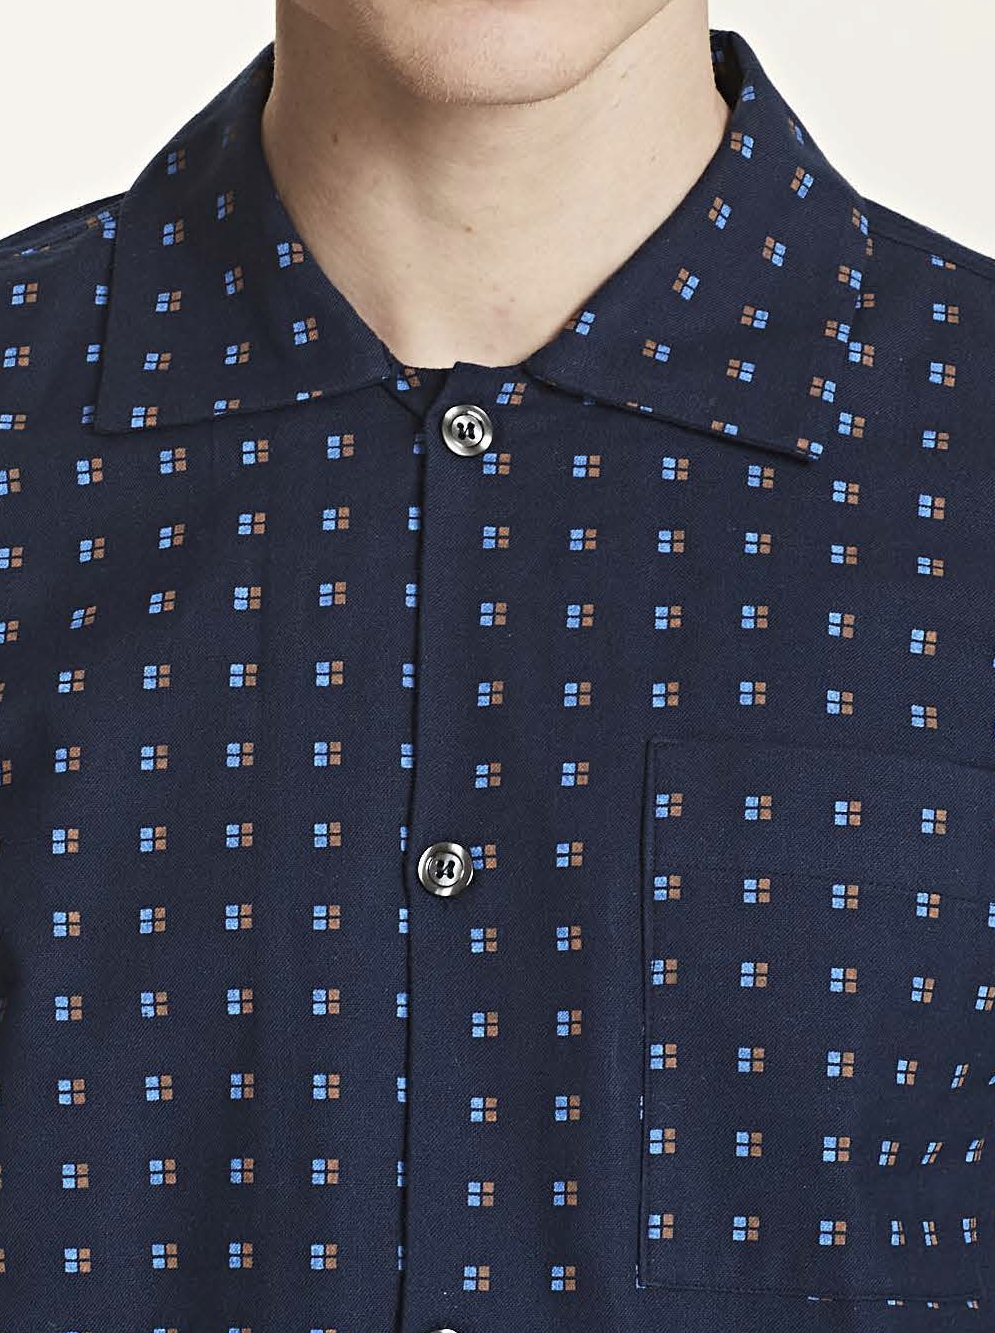 RAGNO SPORT pigiama flanella righe su fondo blu 100% cotone 